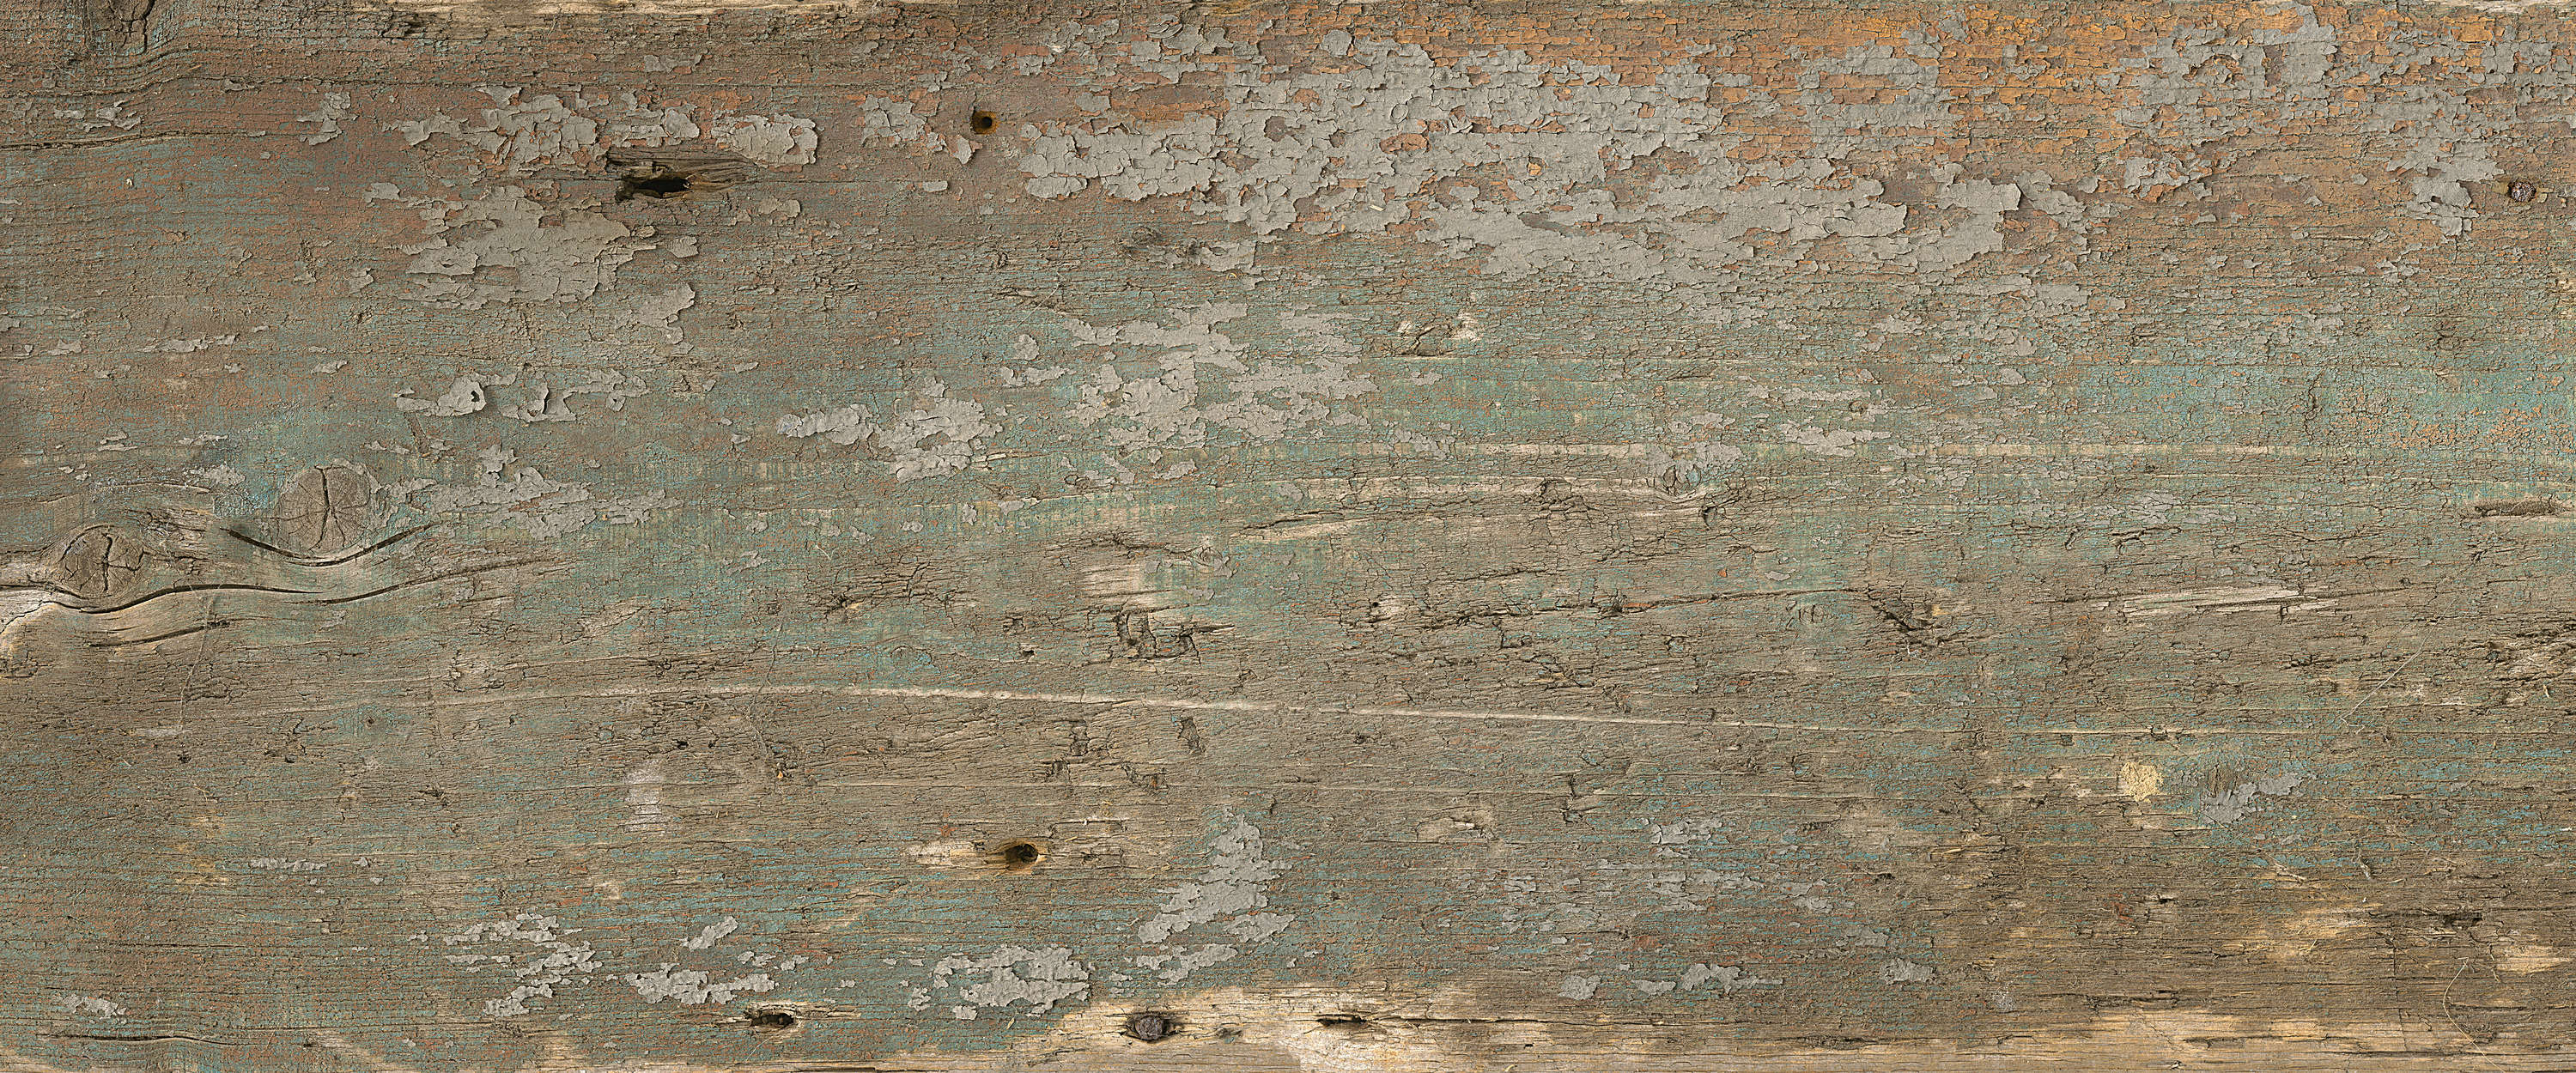             Wood mural board grain in rustic used look
        